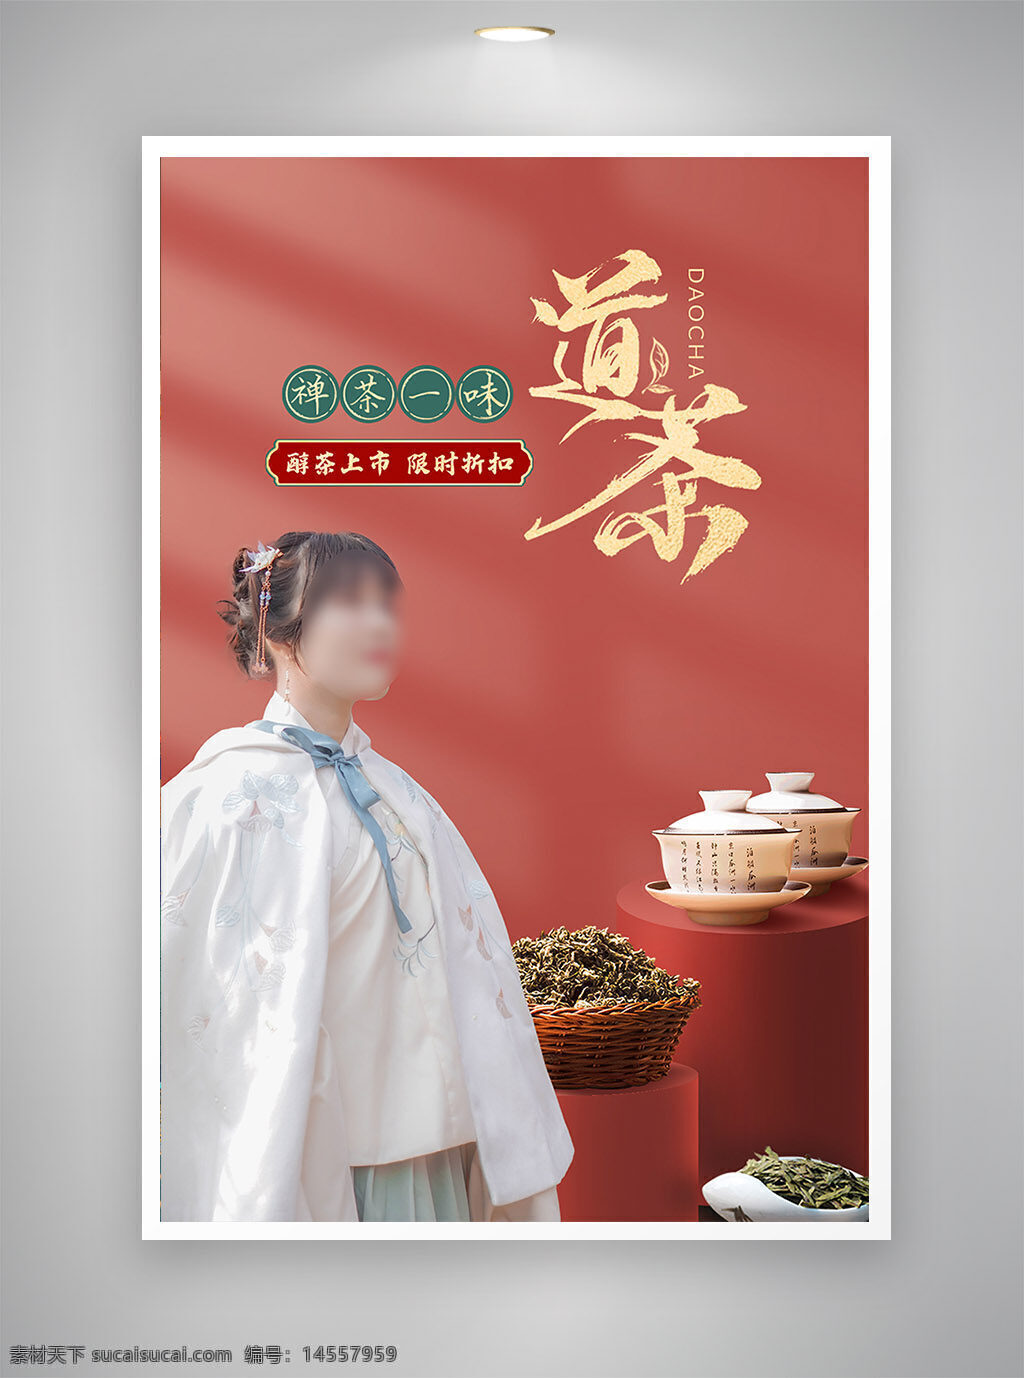 中国风海报 古风海报 促销海报 节日海报 茶道海报